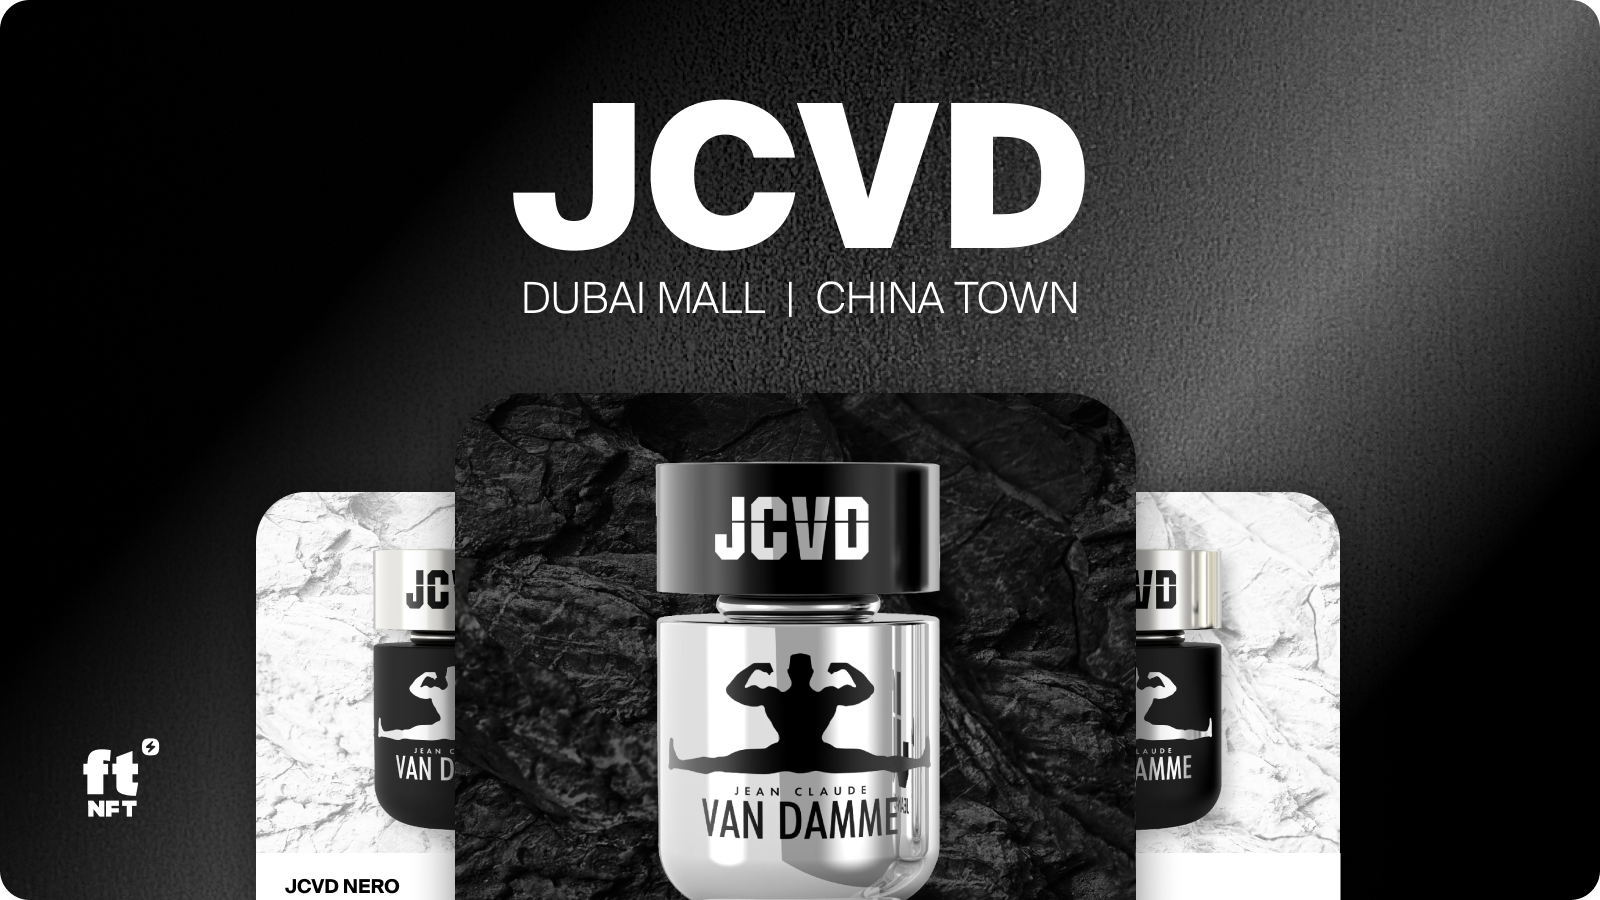 JCVD Eau De Perfume by Jean-Claude Van Damme: Now available at ftNFT!